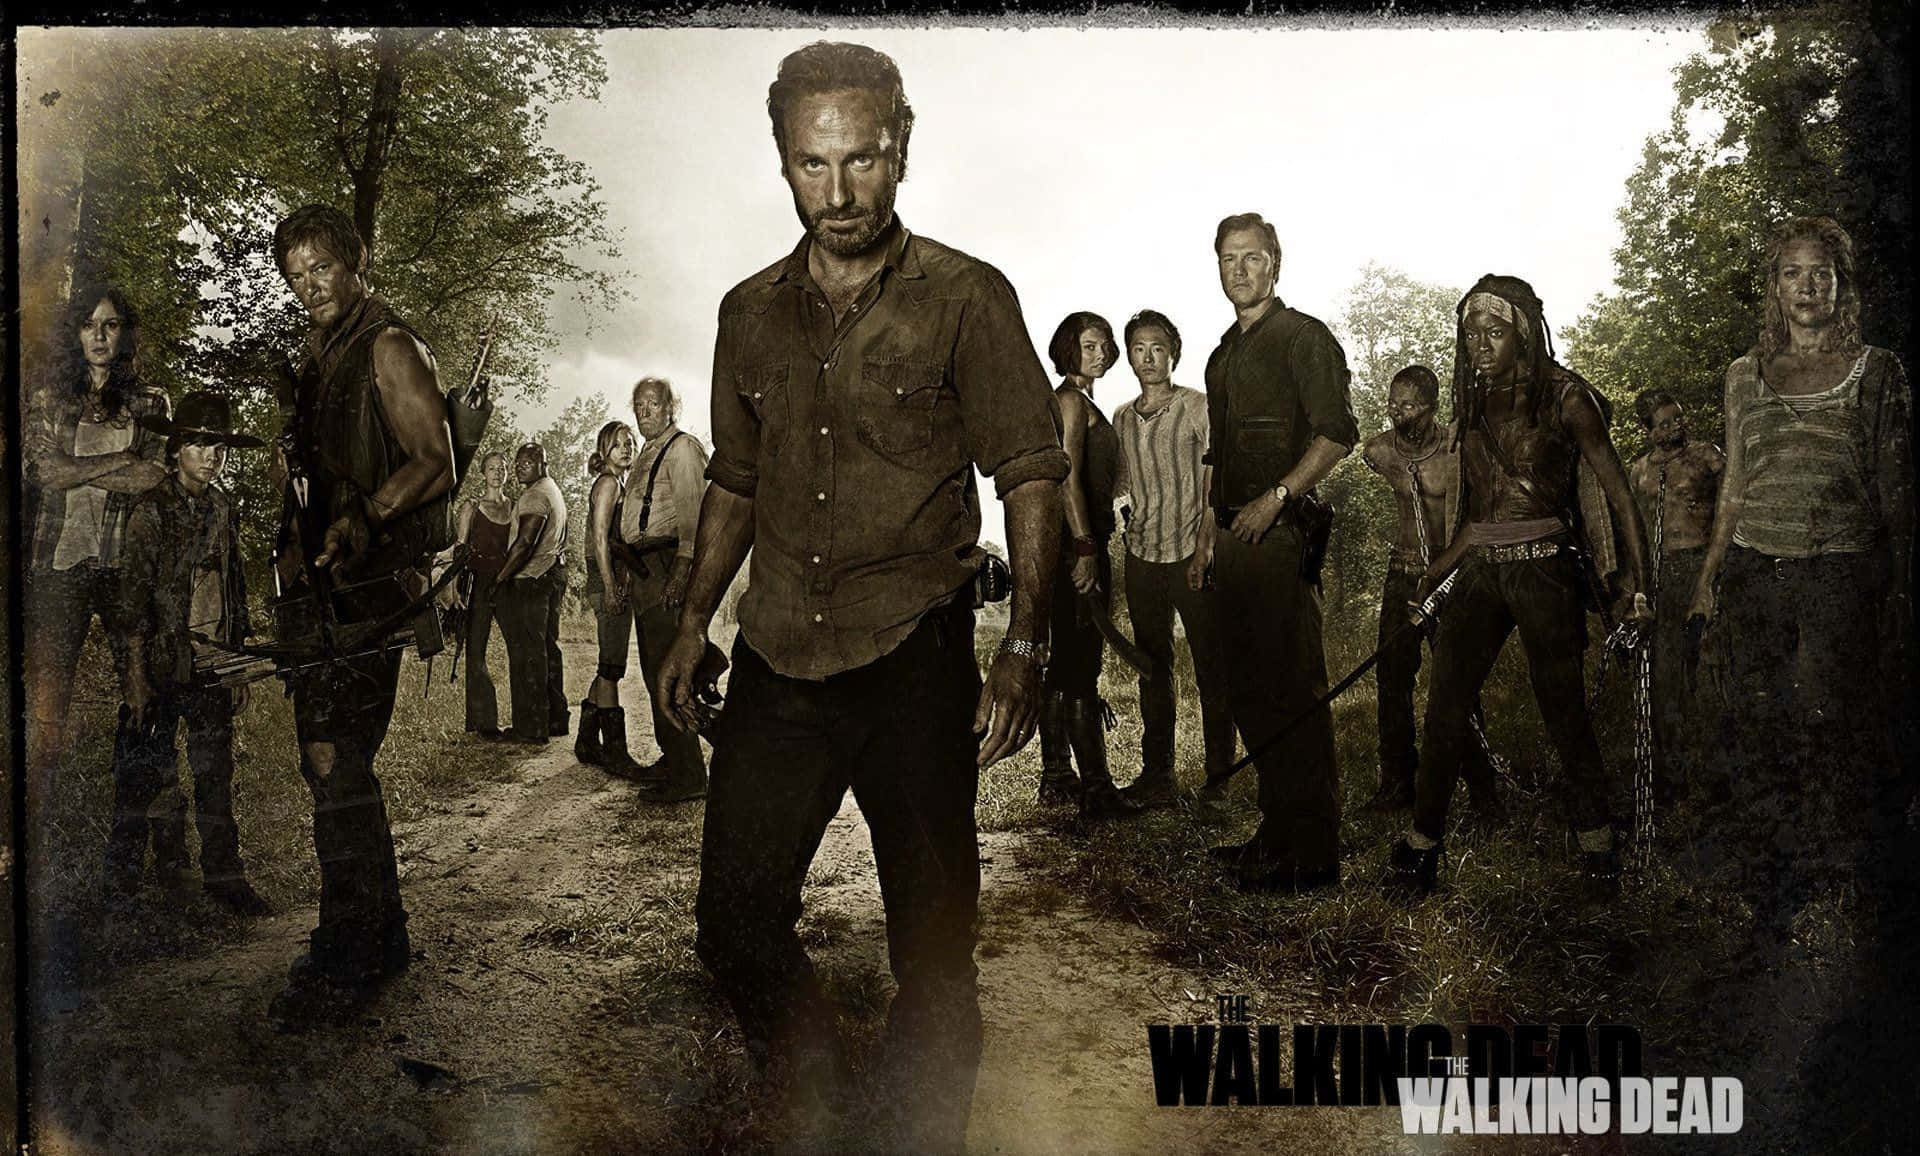 The Walking Dead heroes against a fiery backdrop